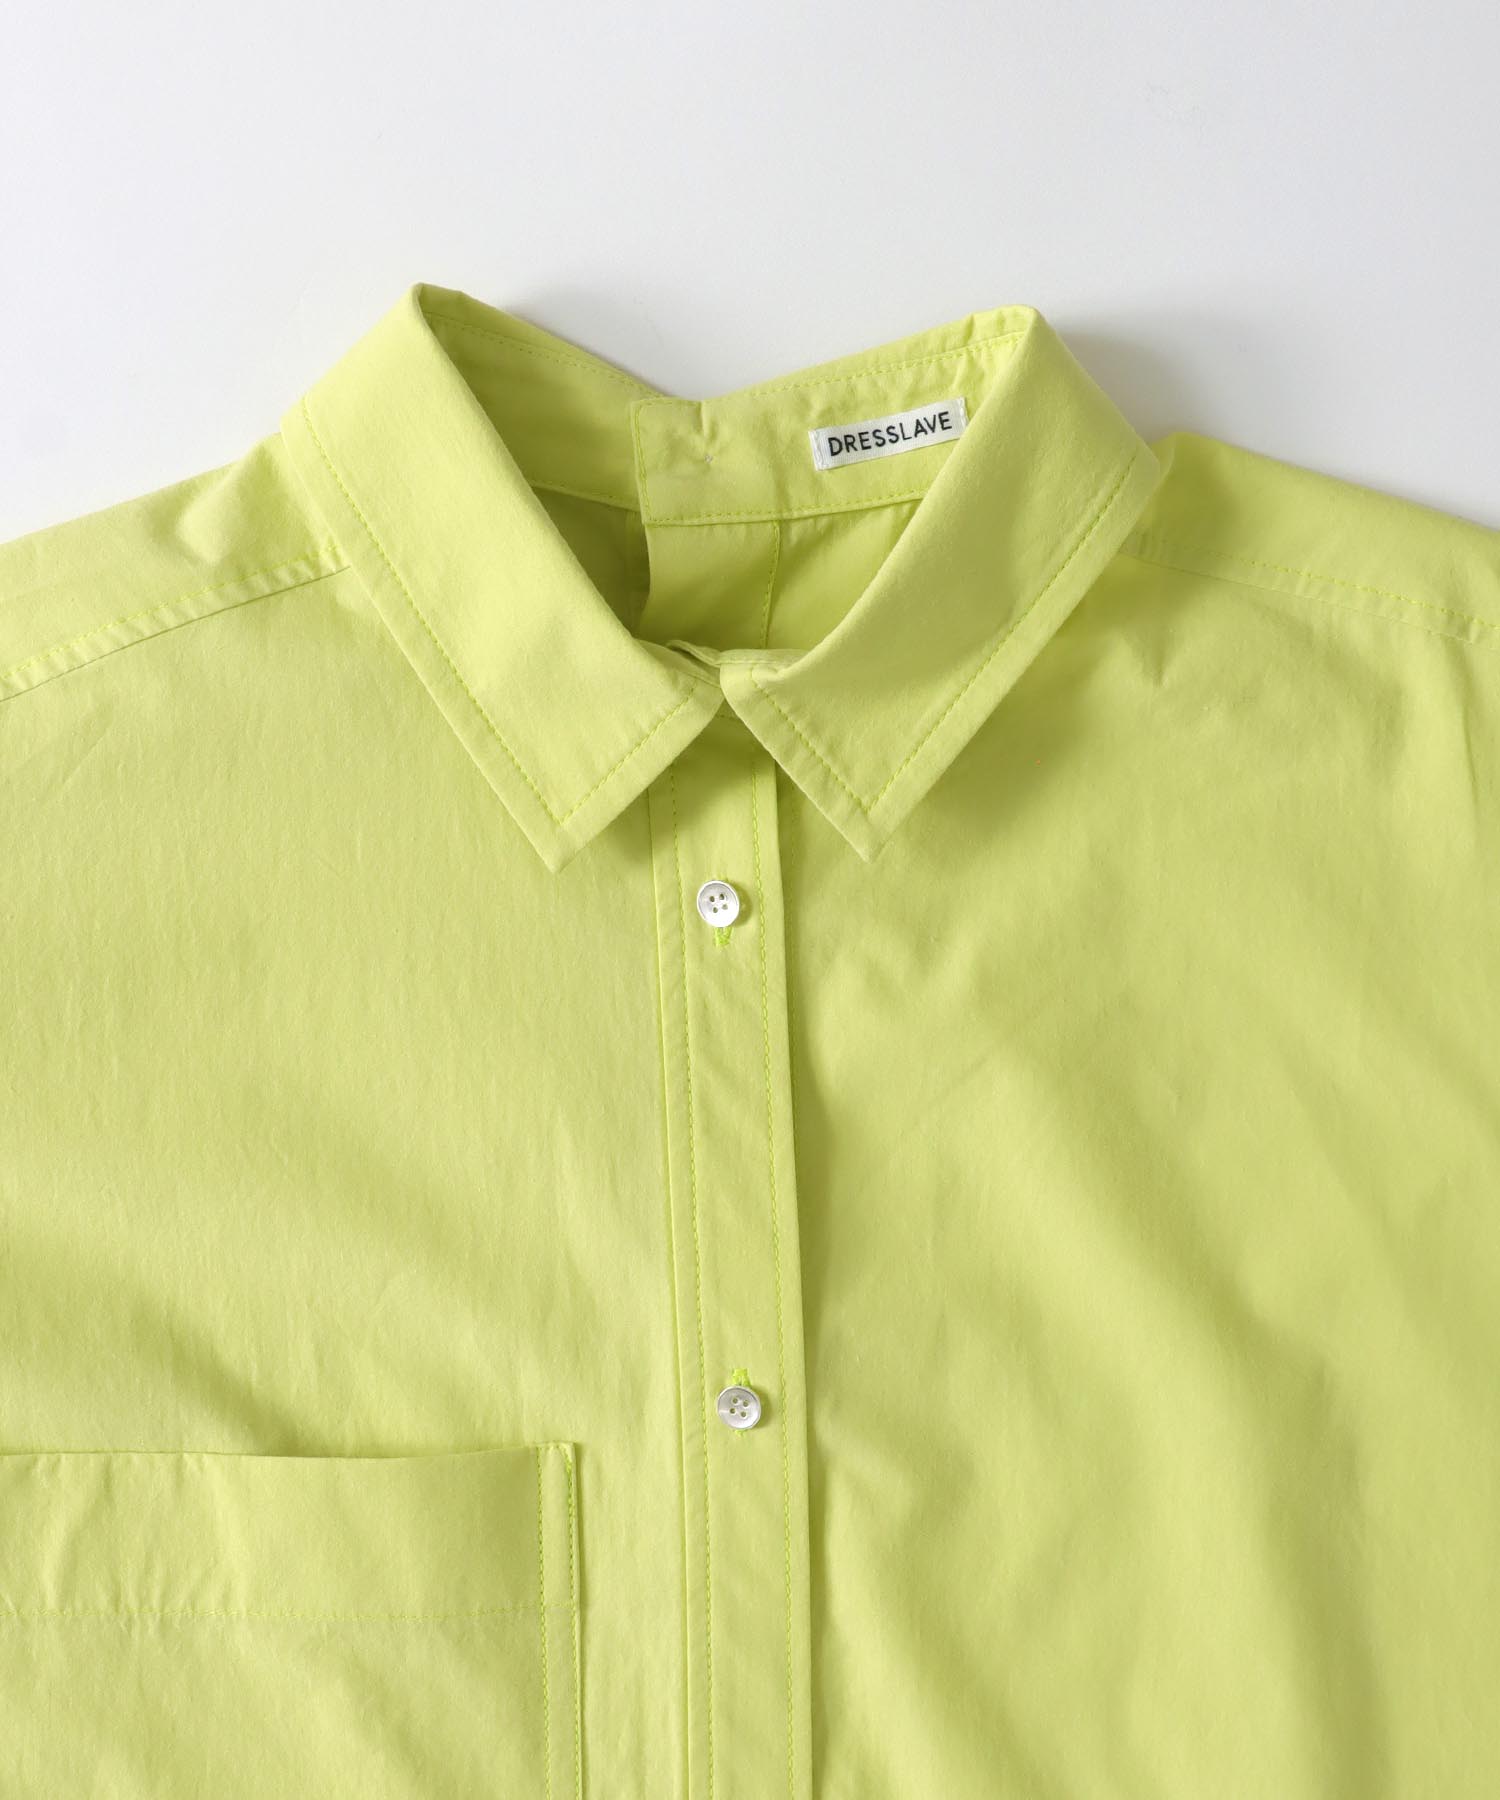 asymmetric color over shirt